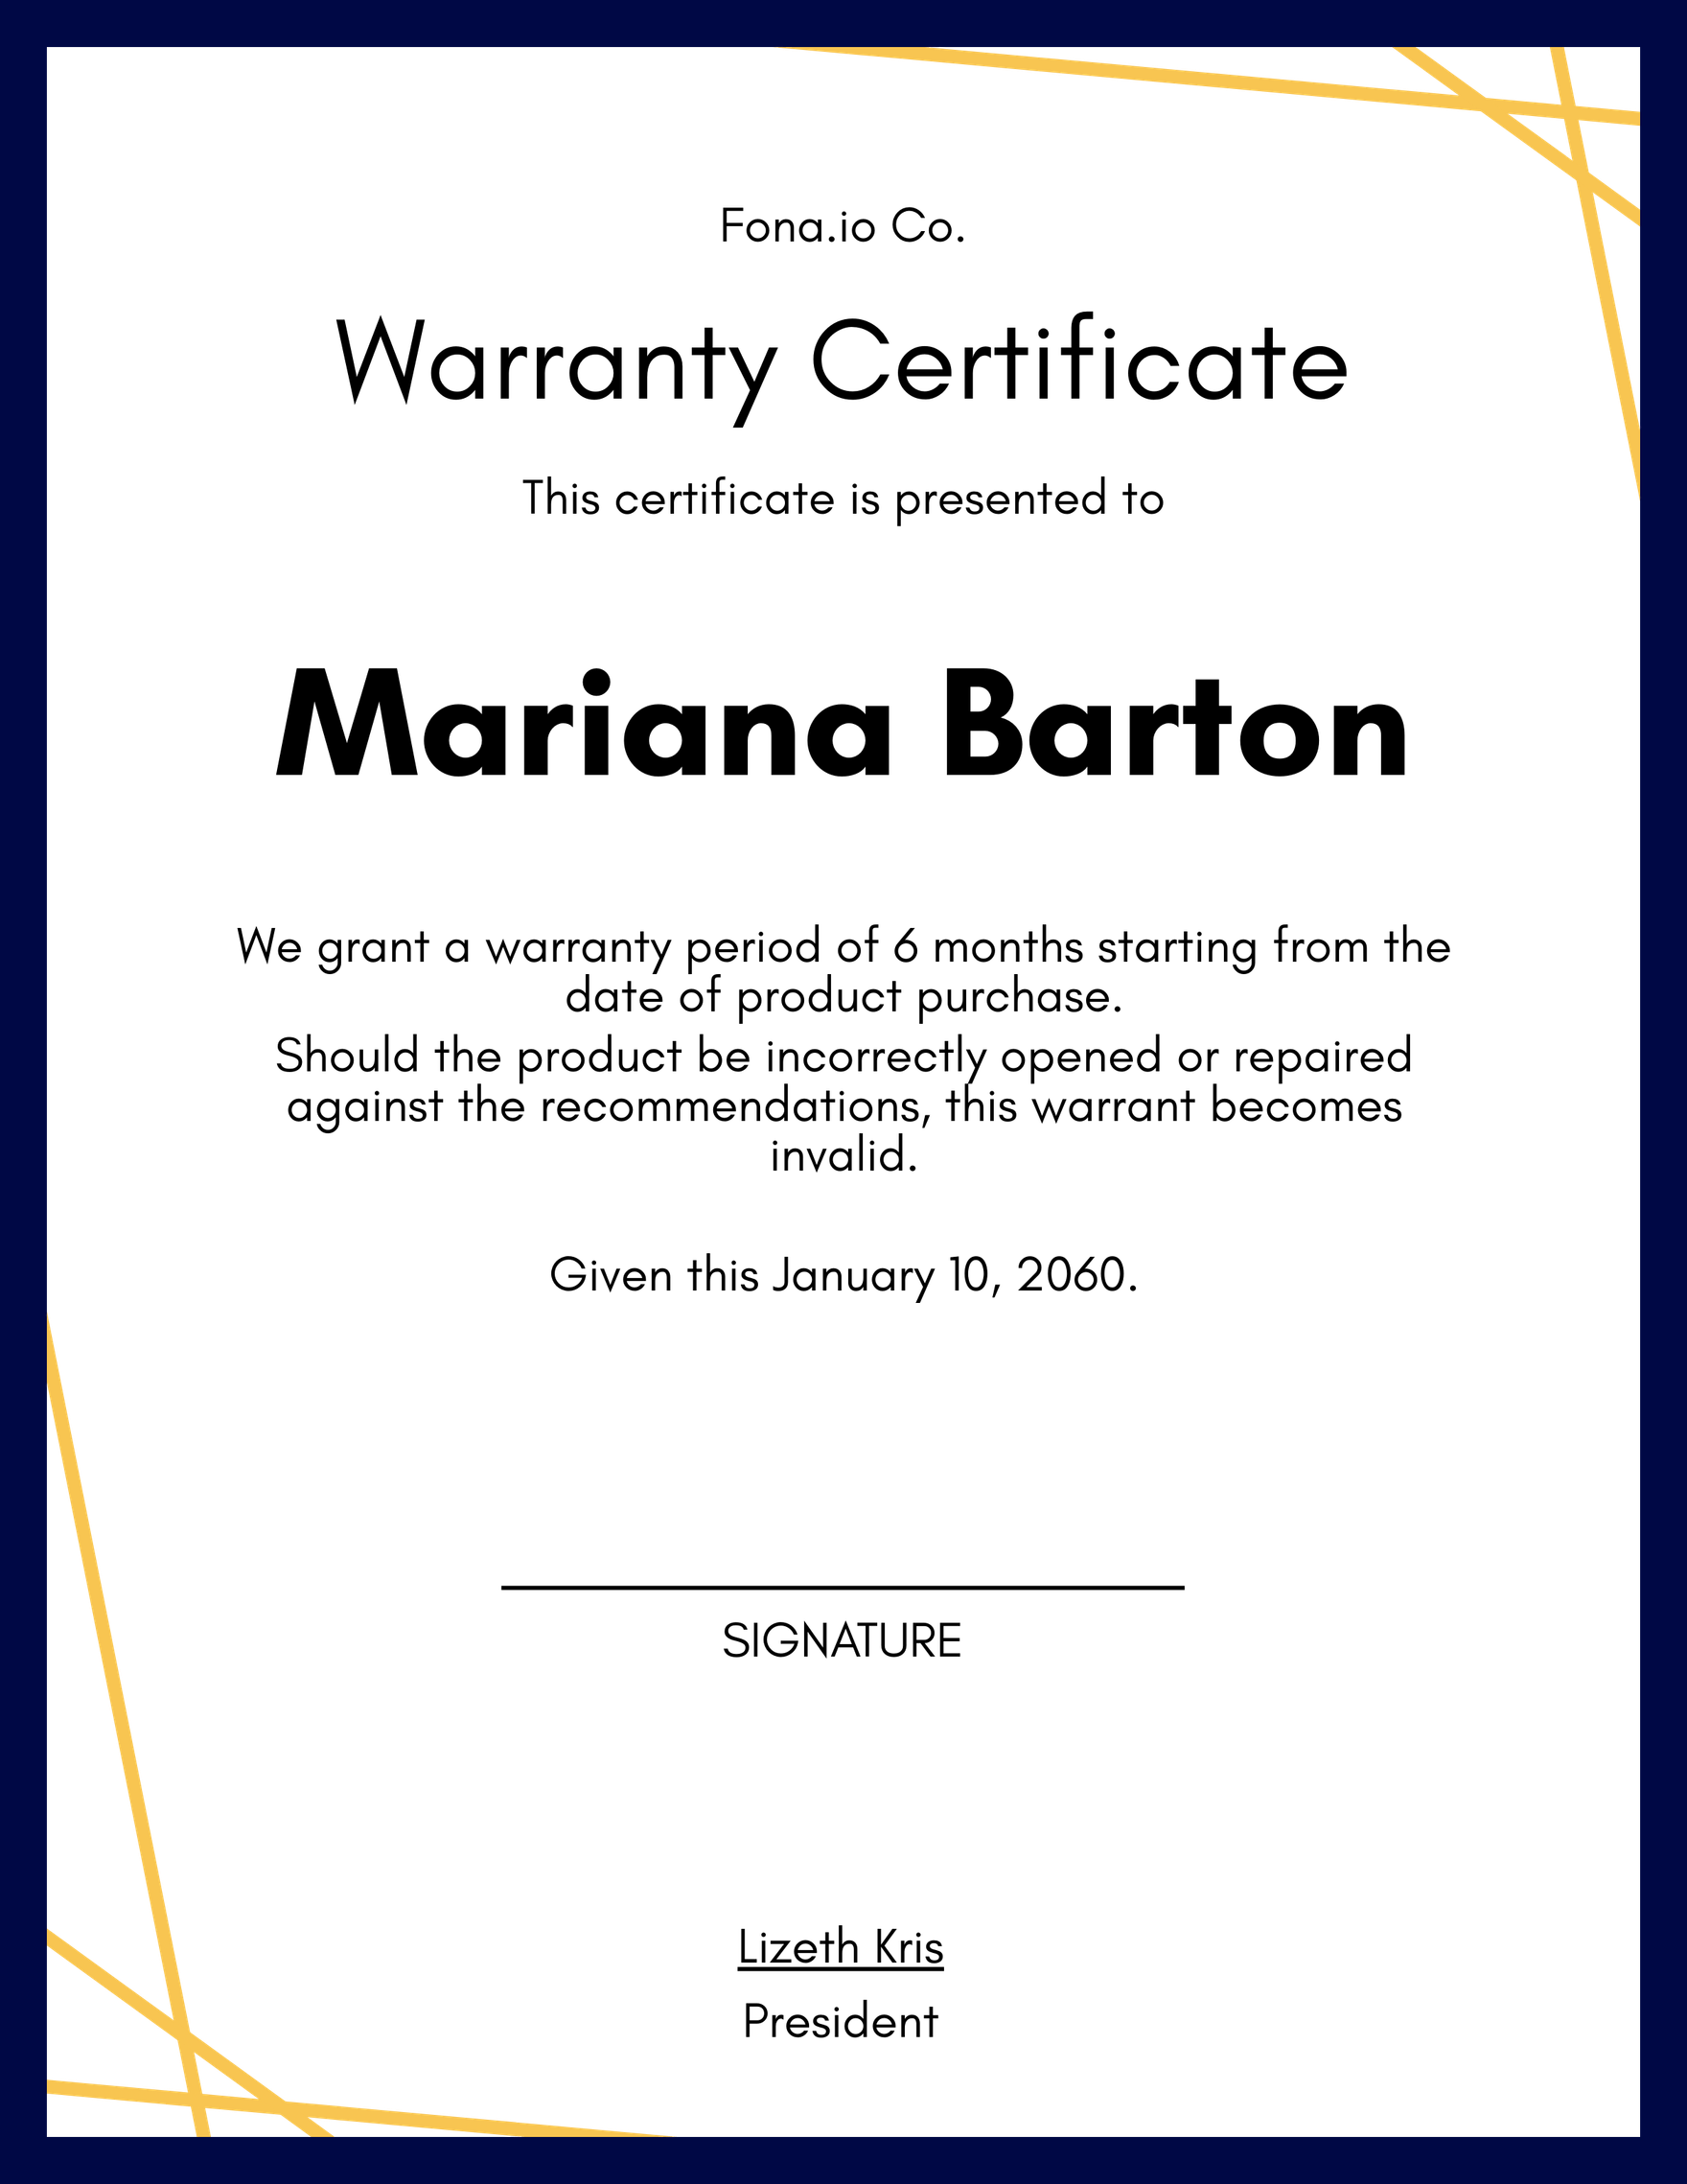 Sample Warranty Certificate